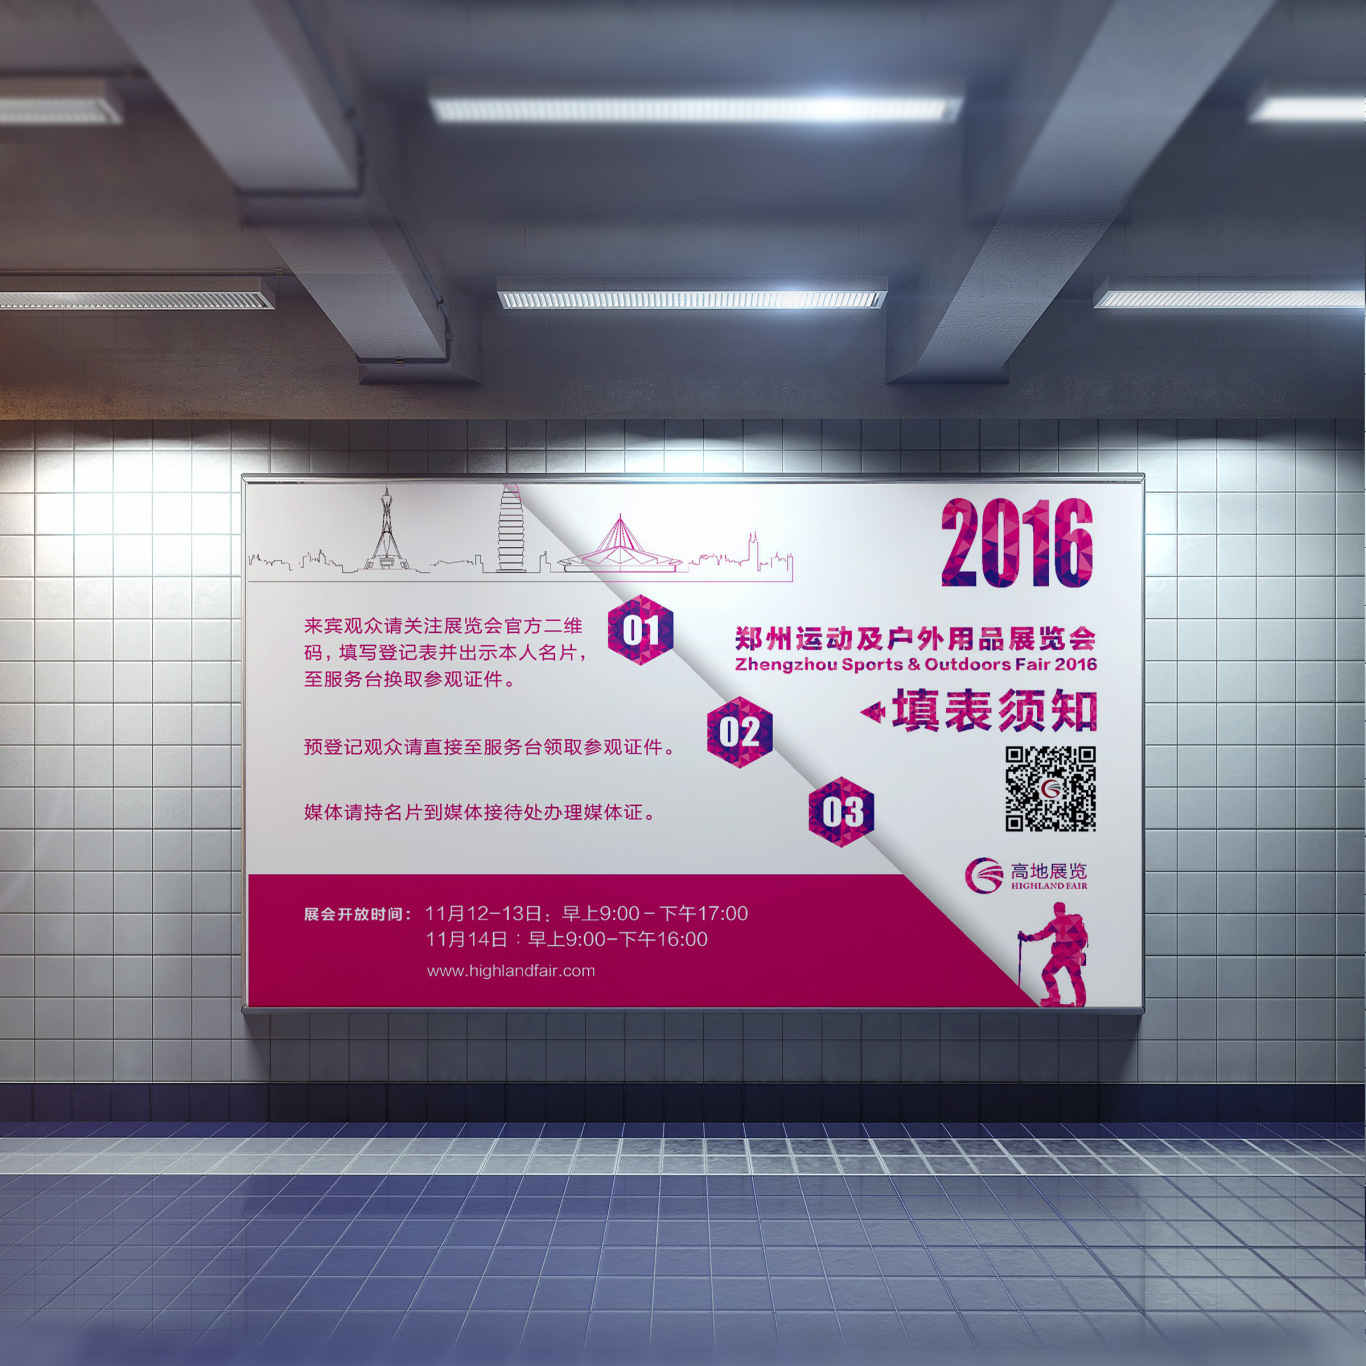 郑州CBD会展中心-户外运动展-展馆设计-海报设计图7